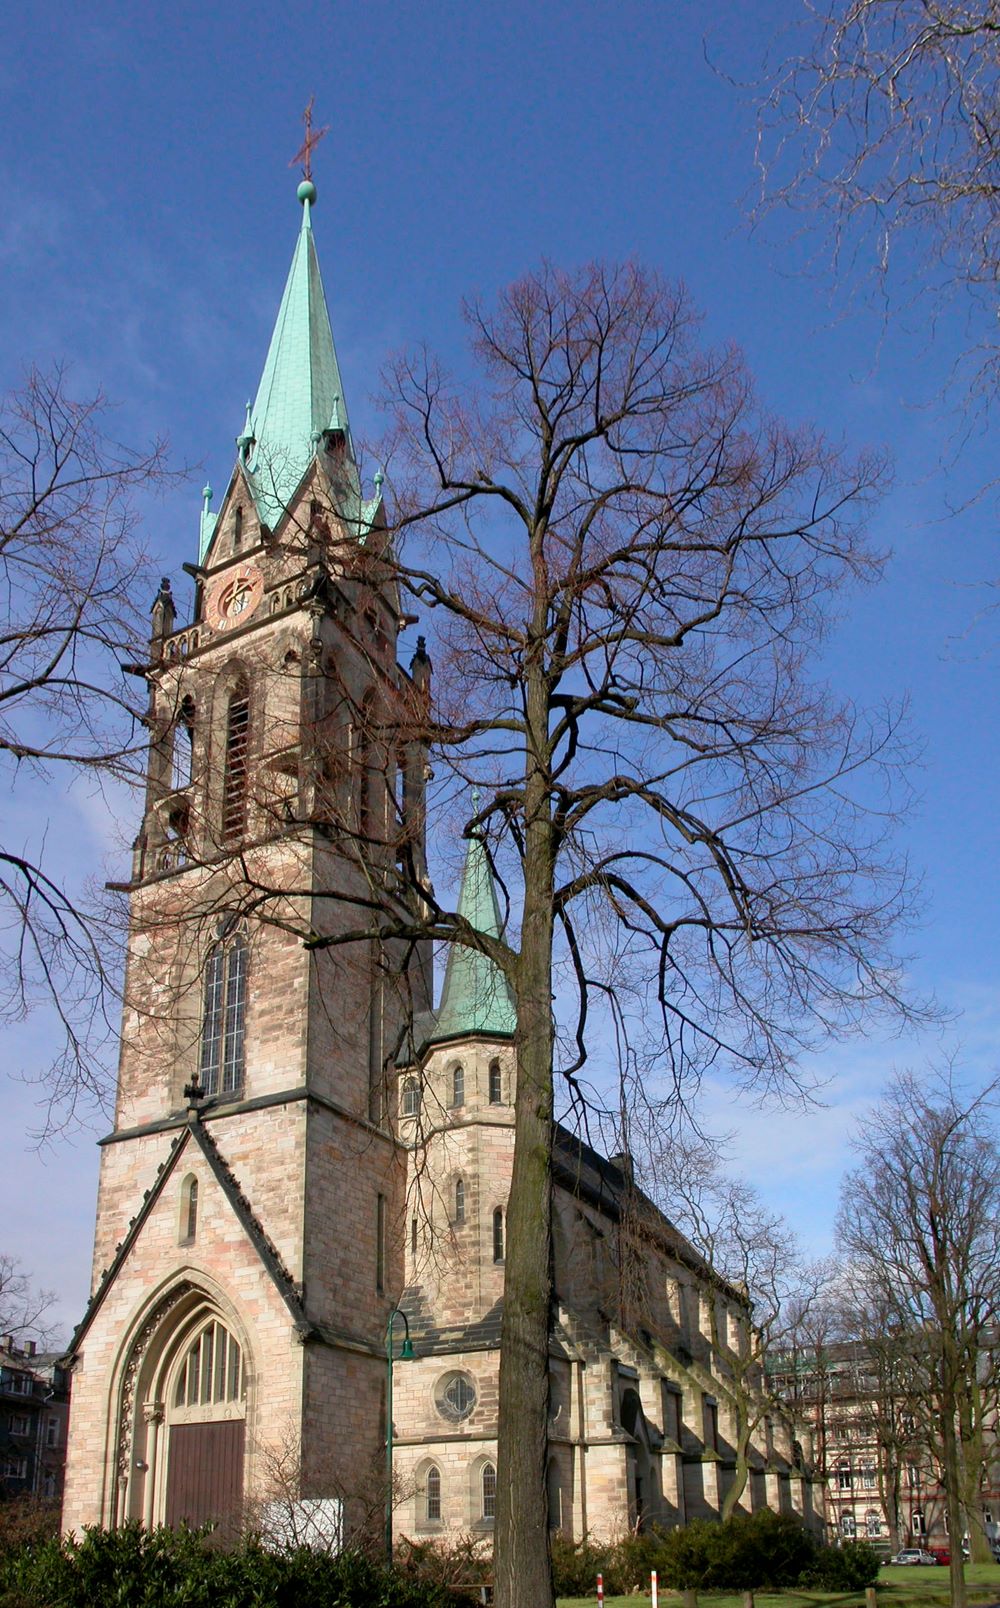 Der neugotische Kirchenbau von 1894 wurde im Krieg 1944 zerstört. Lediglich der Glockenturm blieb nahezu unversehrt. Die Kirche wurde 1952 mit verändertem Innenraum wieder aufgebaut.
Über der Tür in der Eingangshalle begrüßt den Besucher ein Mosaik nach d